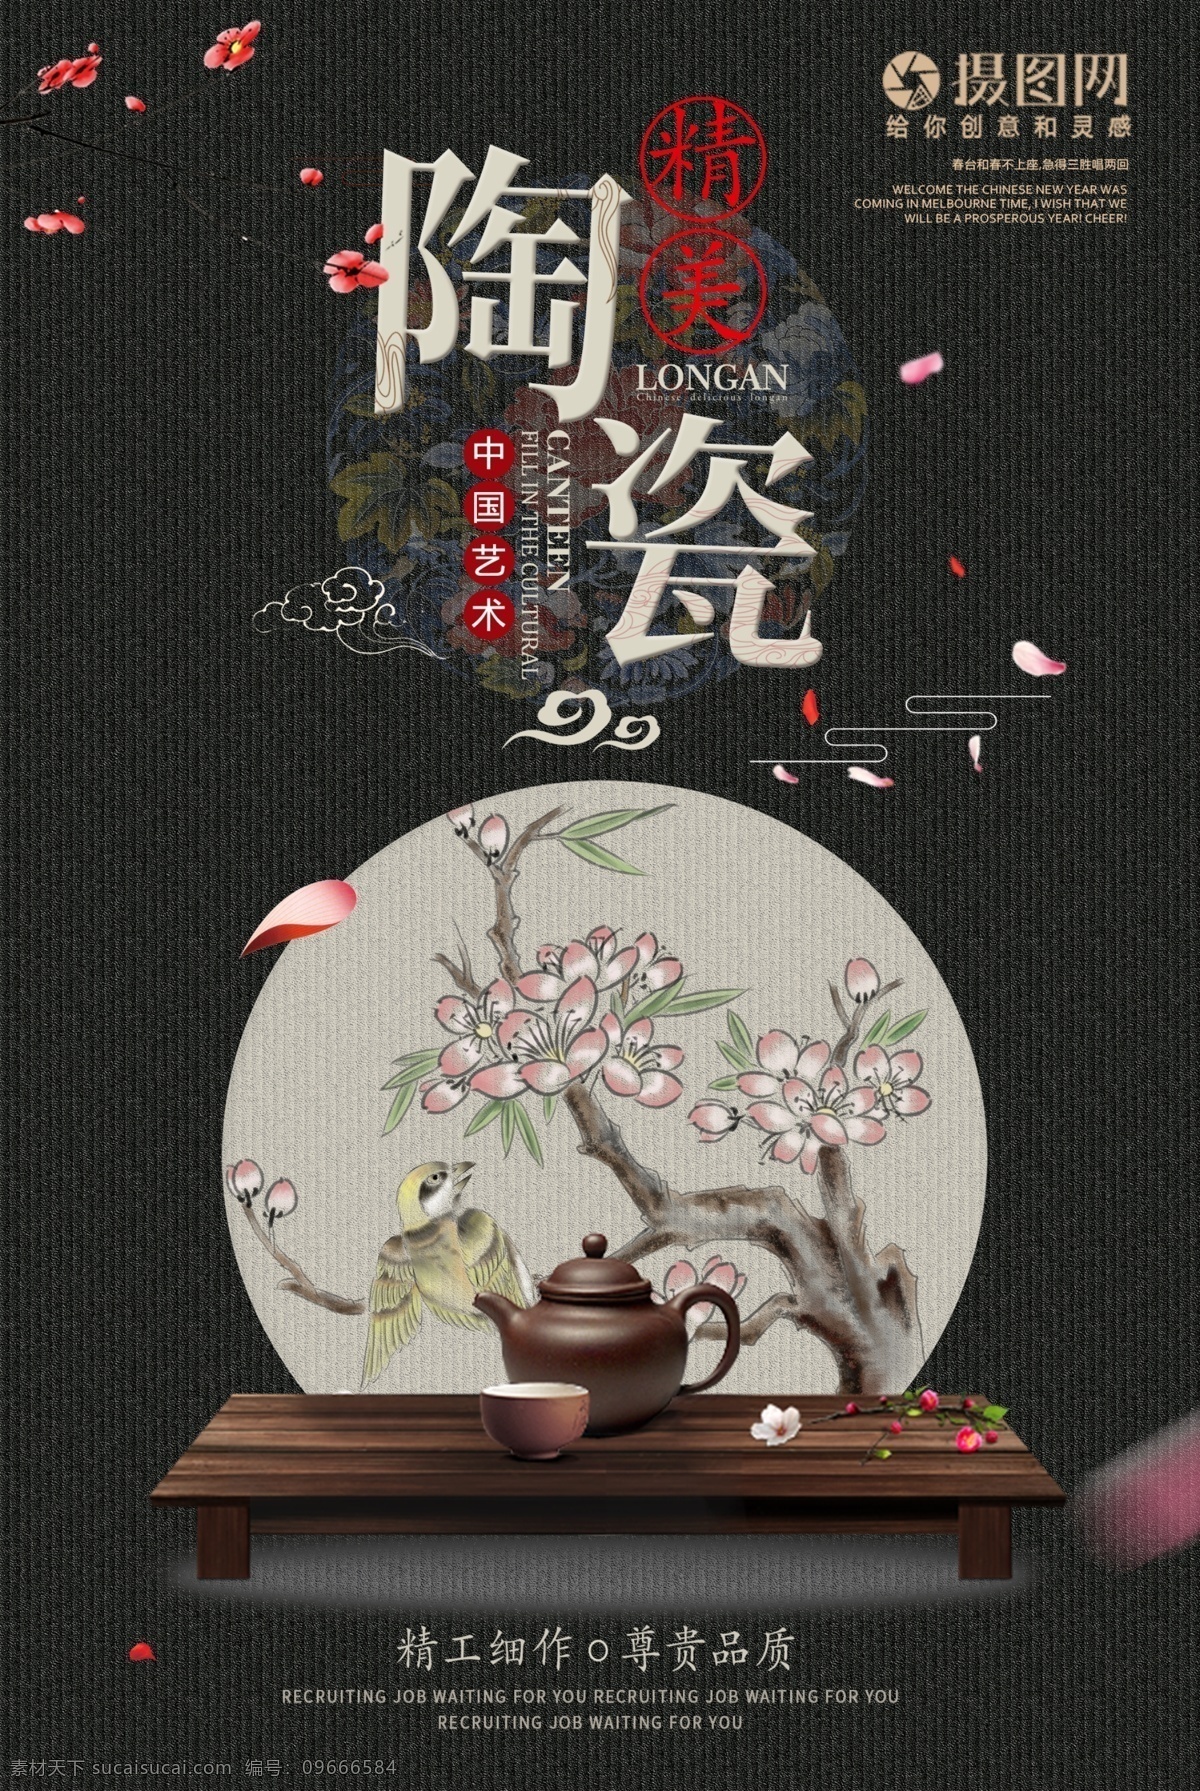 中国 艺术 传统 瓷器 文化 陶瓷 海报 艺术瓷器 中国传统文化 中国风 文雅海报 艺术品 陶艺 非遗 素雅